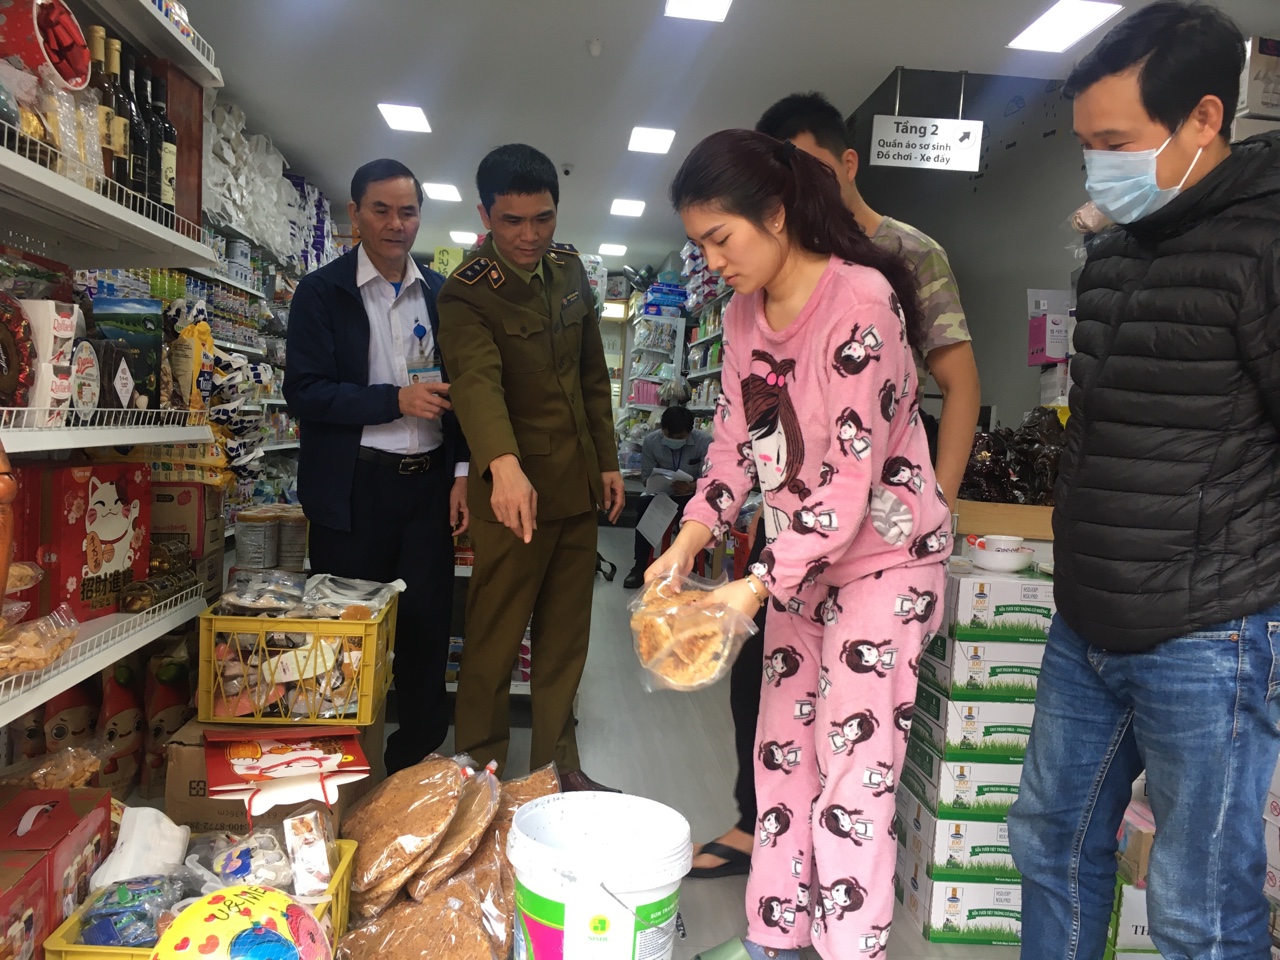 Đoàn kiểm tra liên ngành huyện Tiên Yên kiểm tra ATTP tại một cửa hàng trên địa bàn thị trấn Tiên Yên